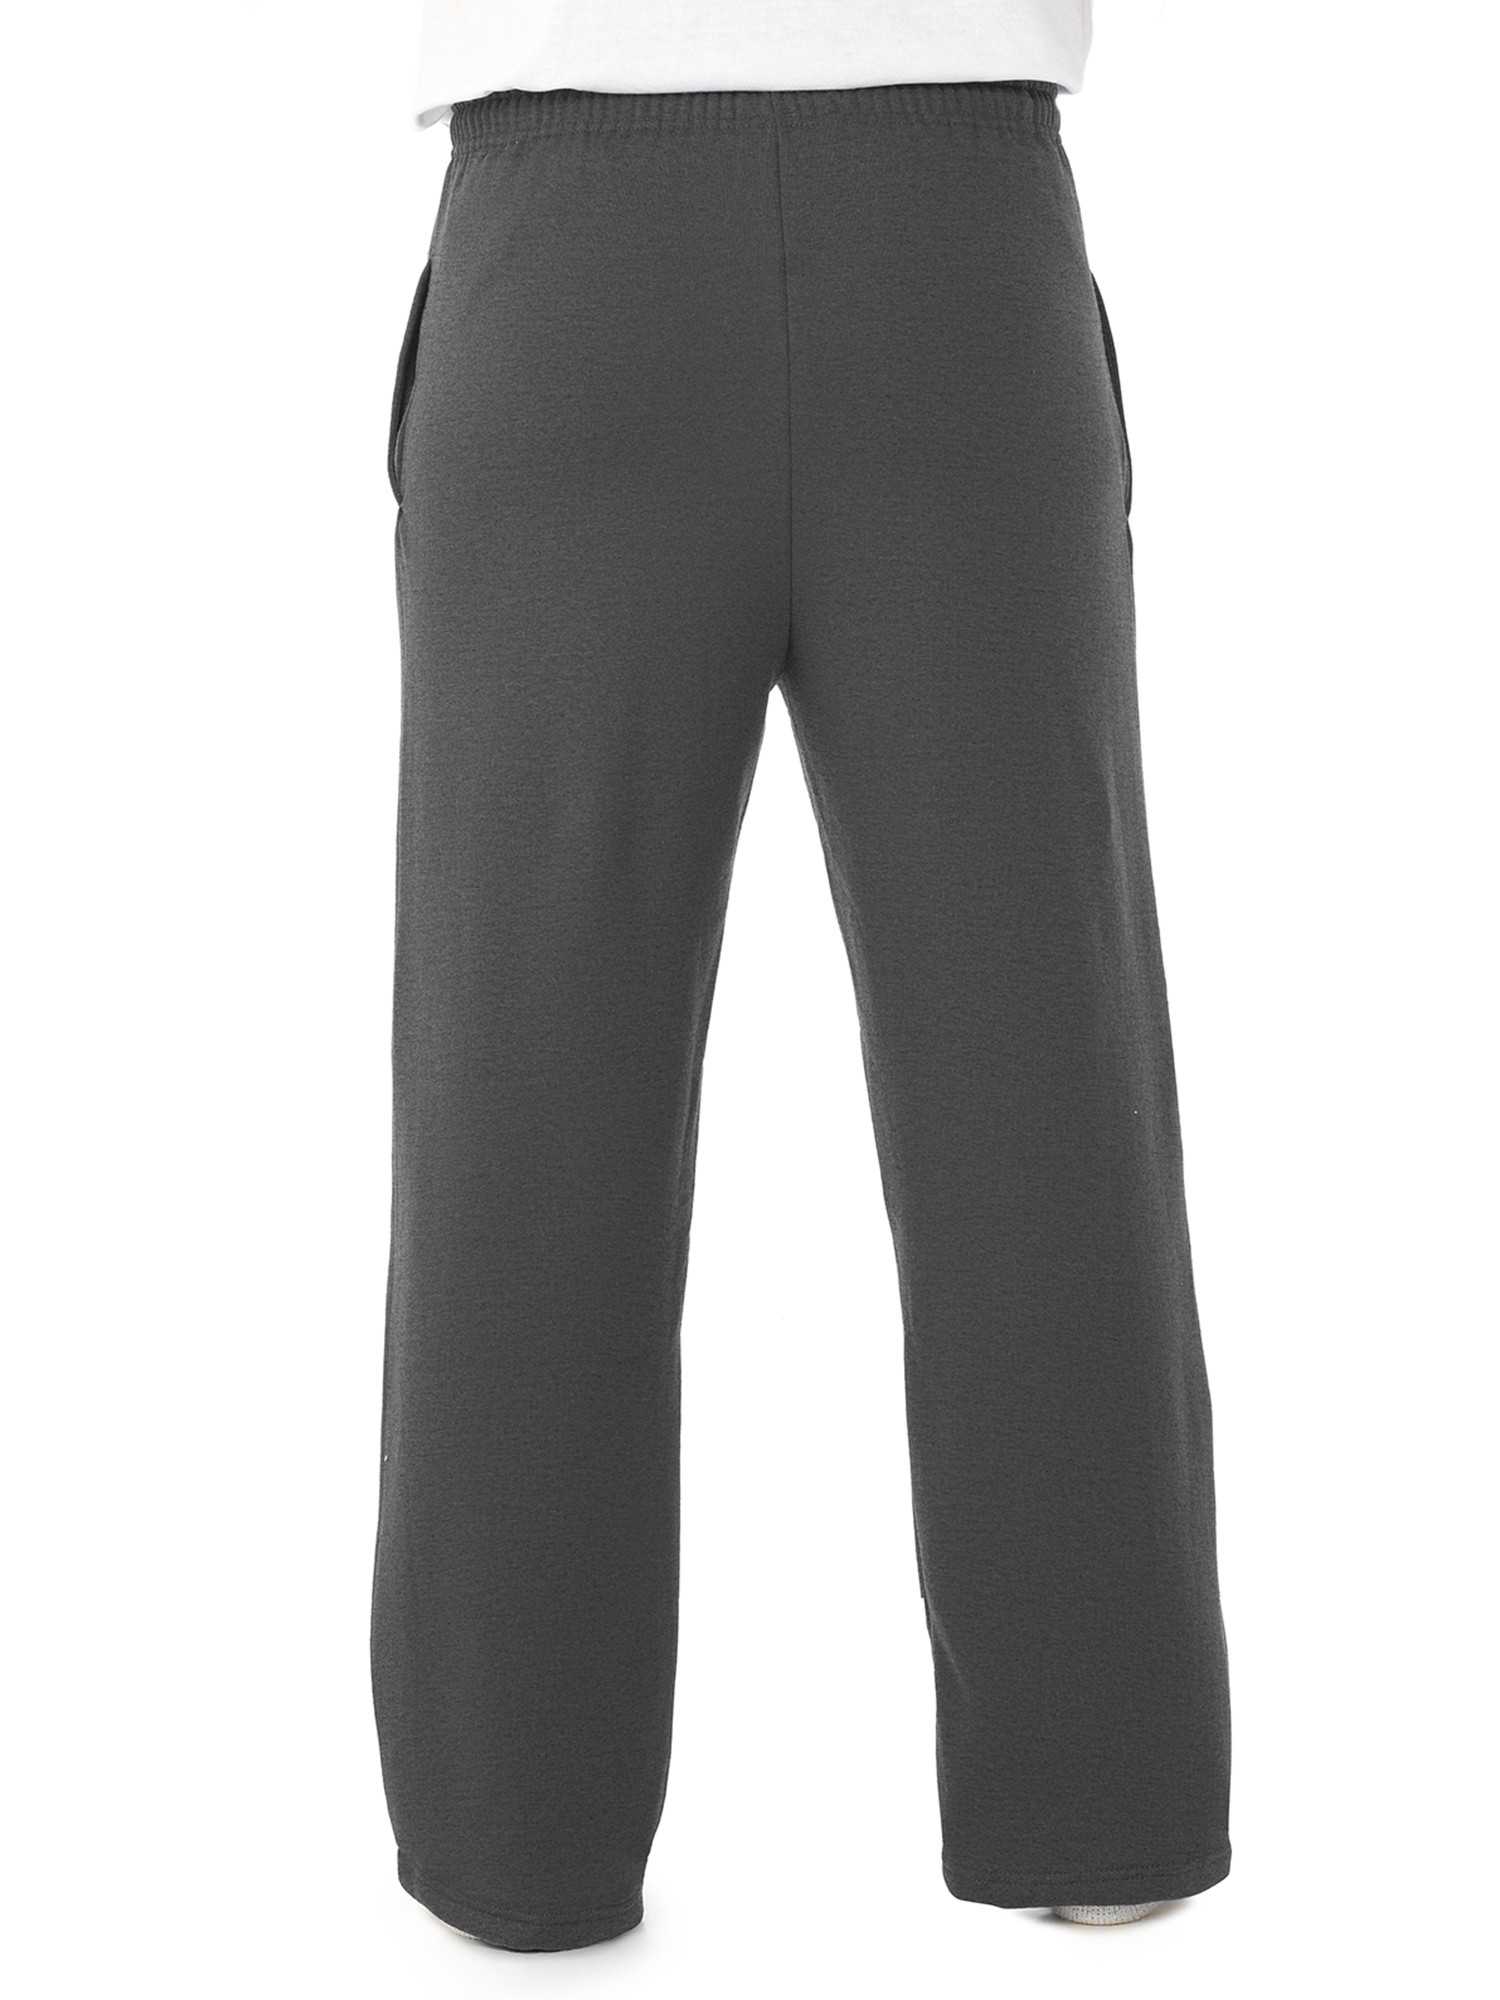 Jerzees Men's and Big Men's Fleece Open Bottom Sweatpants - image 3 of 5